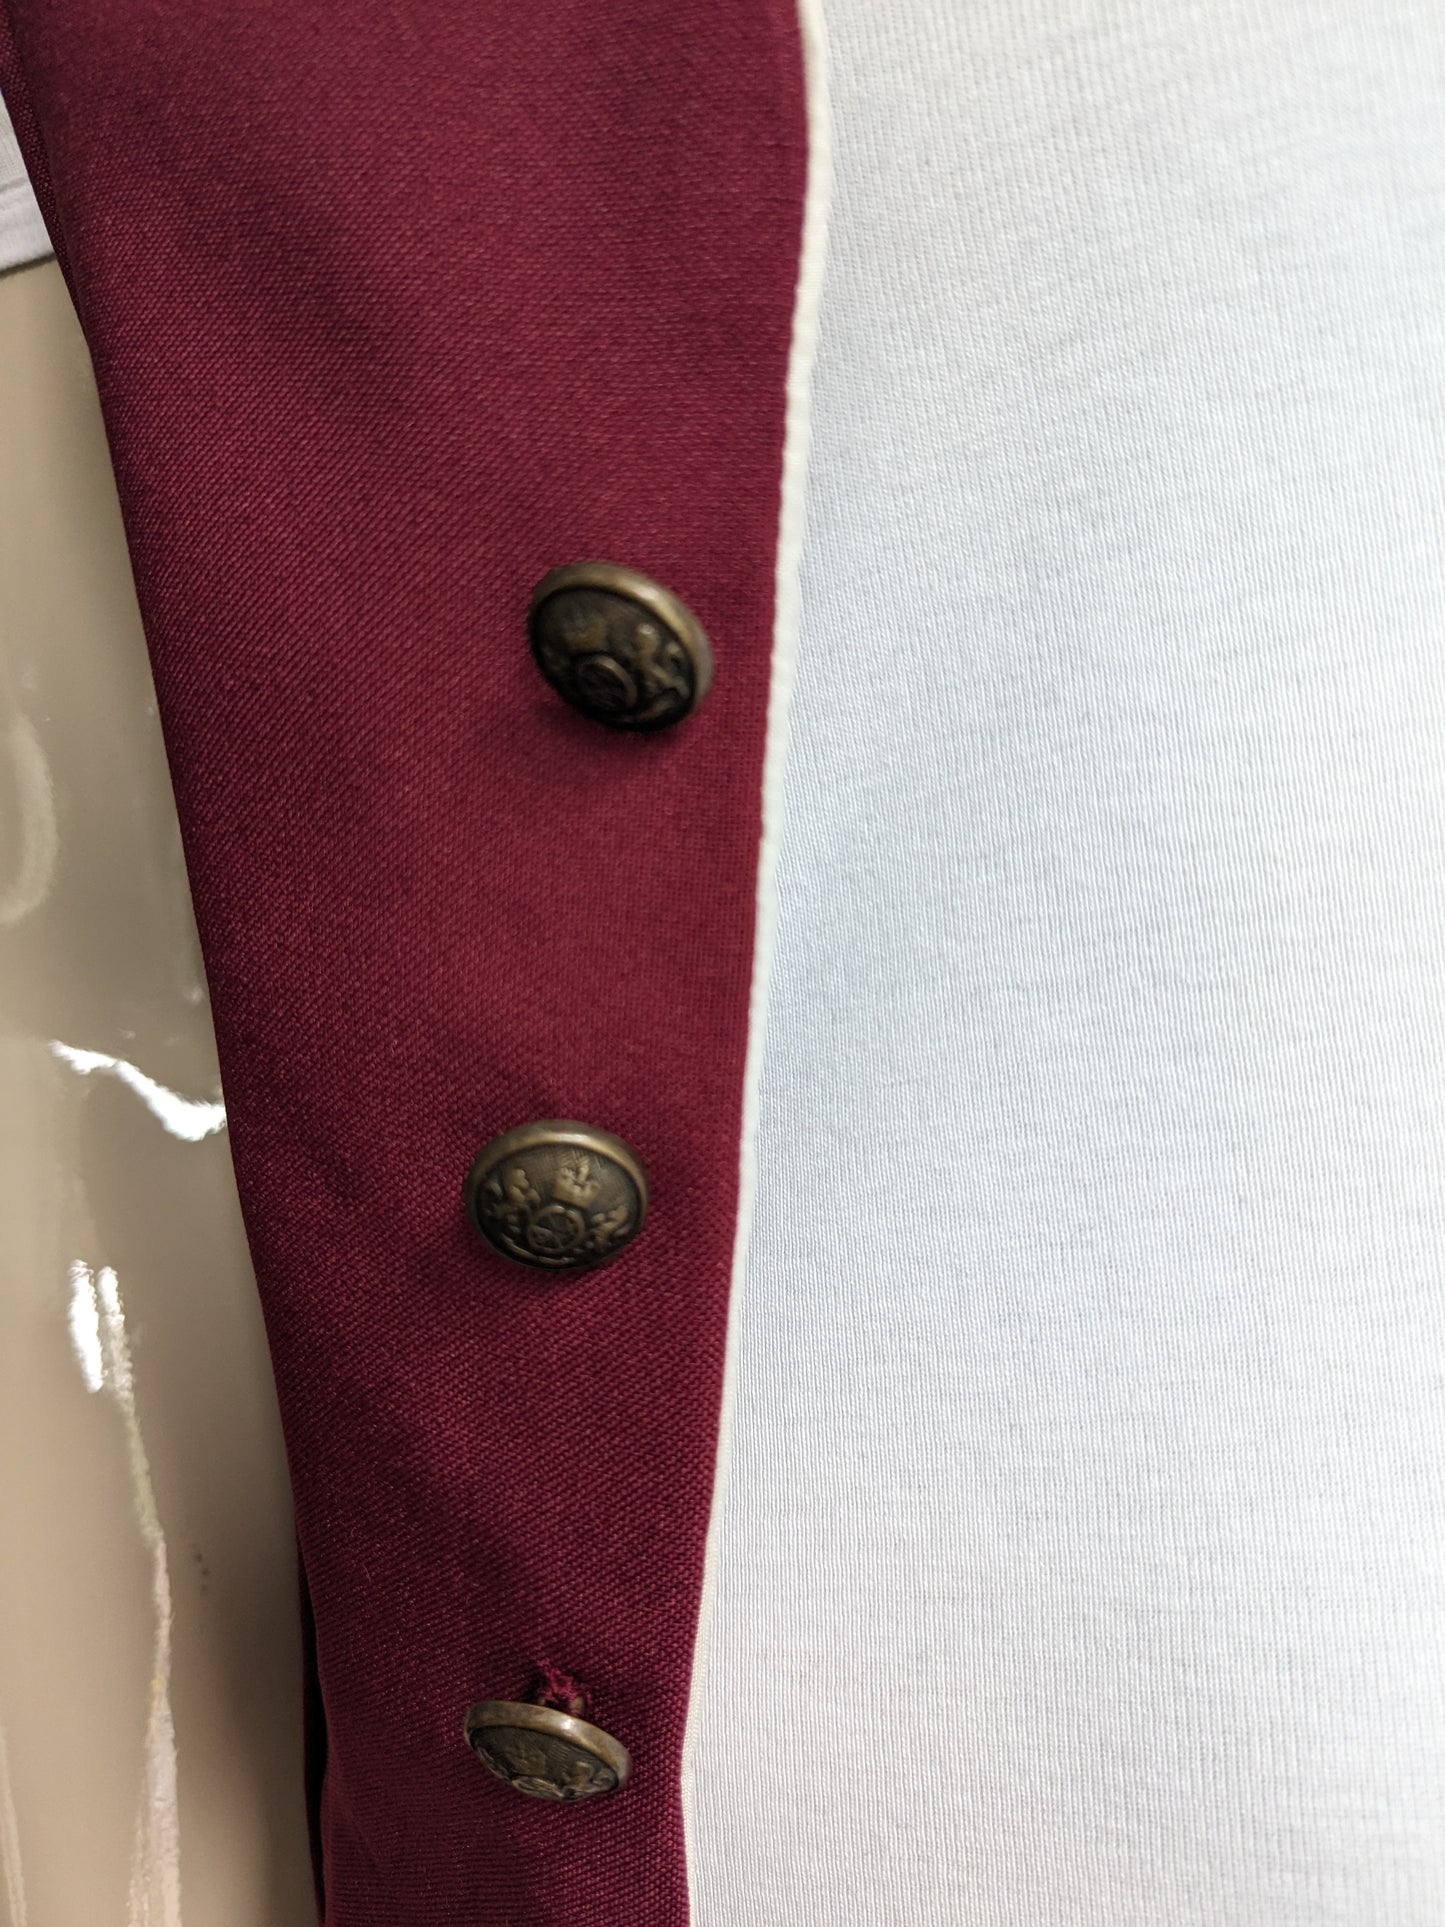 Gilet vintage. Bordeaux colorés avec de beaux boutons et des côtés uniques. Taille xs.